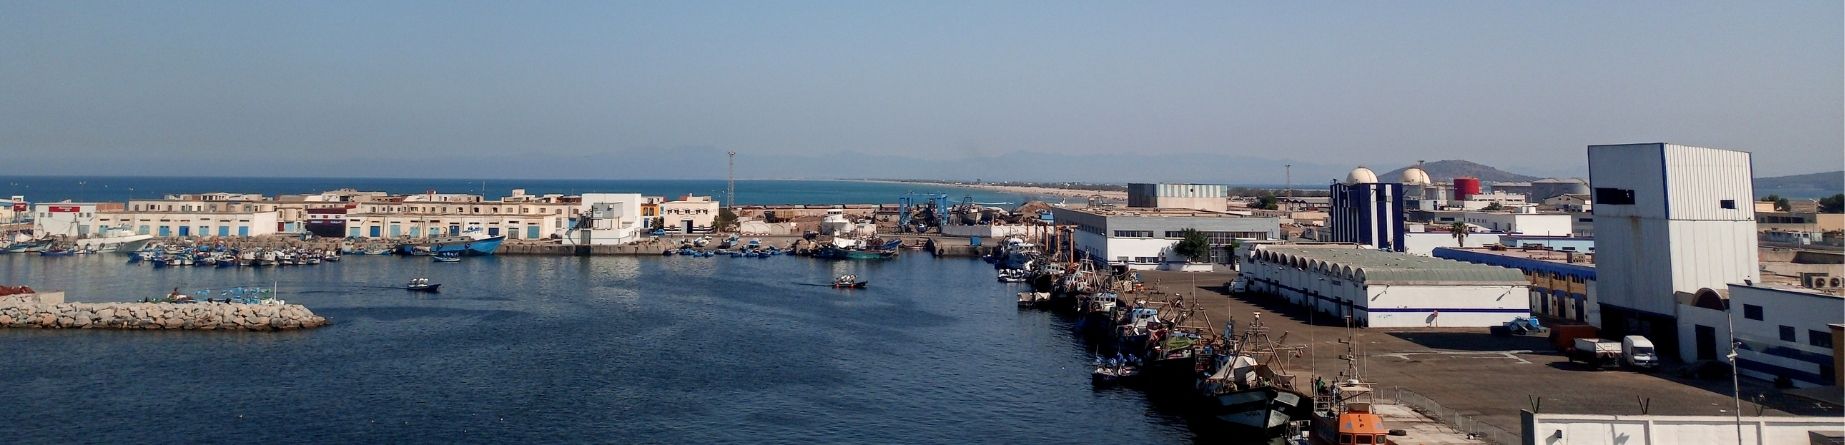 Imatge recurs del port de destinació Nador per a la ruta en ferry Sete - Nador